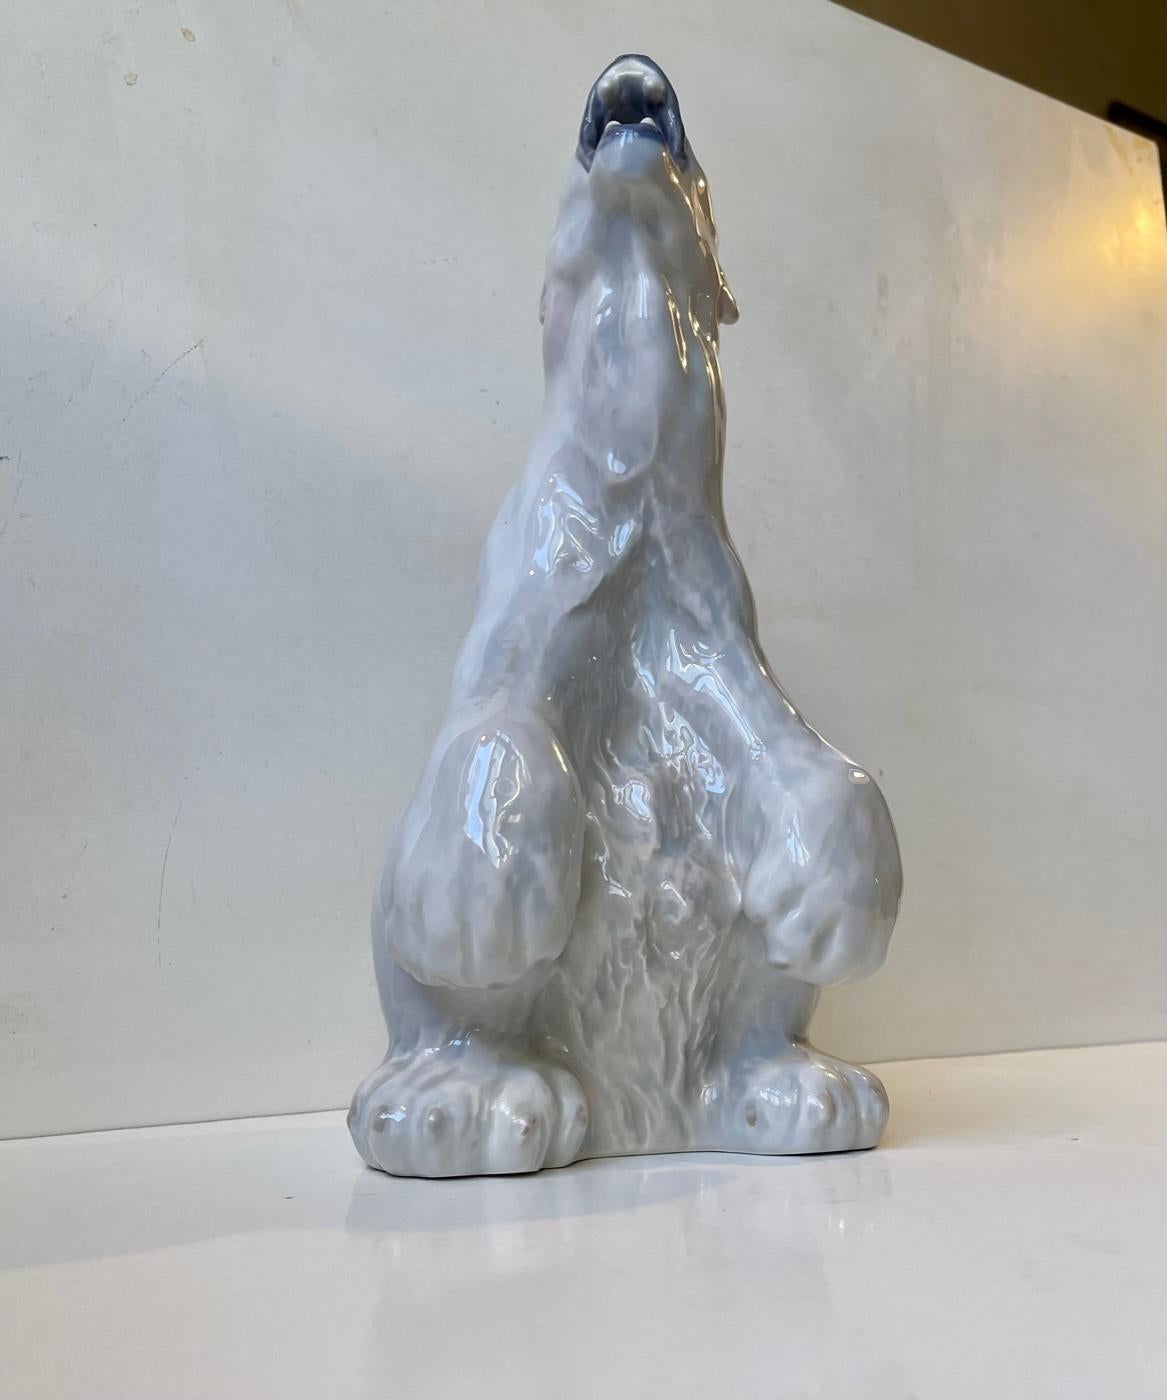 Grande figurine/sculpture d'ours polaire rugissant en porcelaine.  Conçu en 1901 par Carl Frederik Liisberg pour Royal Copenhagen. Cet exemple date des années 1960. Modèle no. 502. Dimensions : Hauteur 32 cm / 12.3